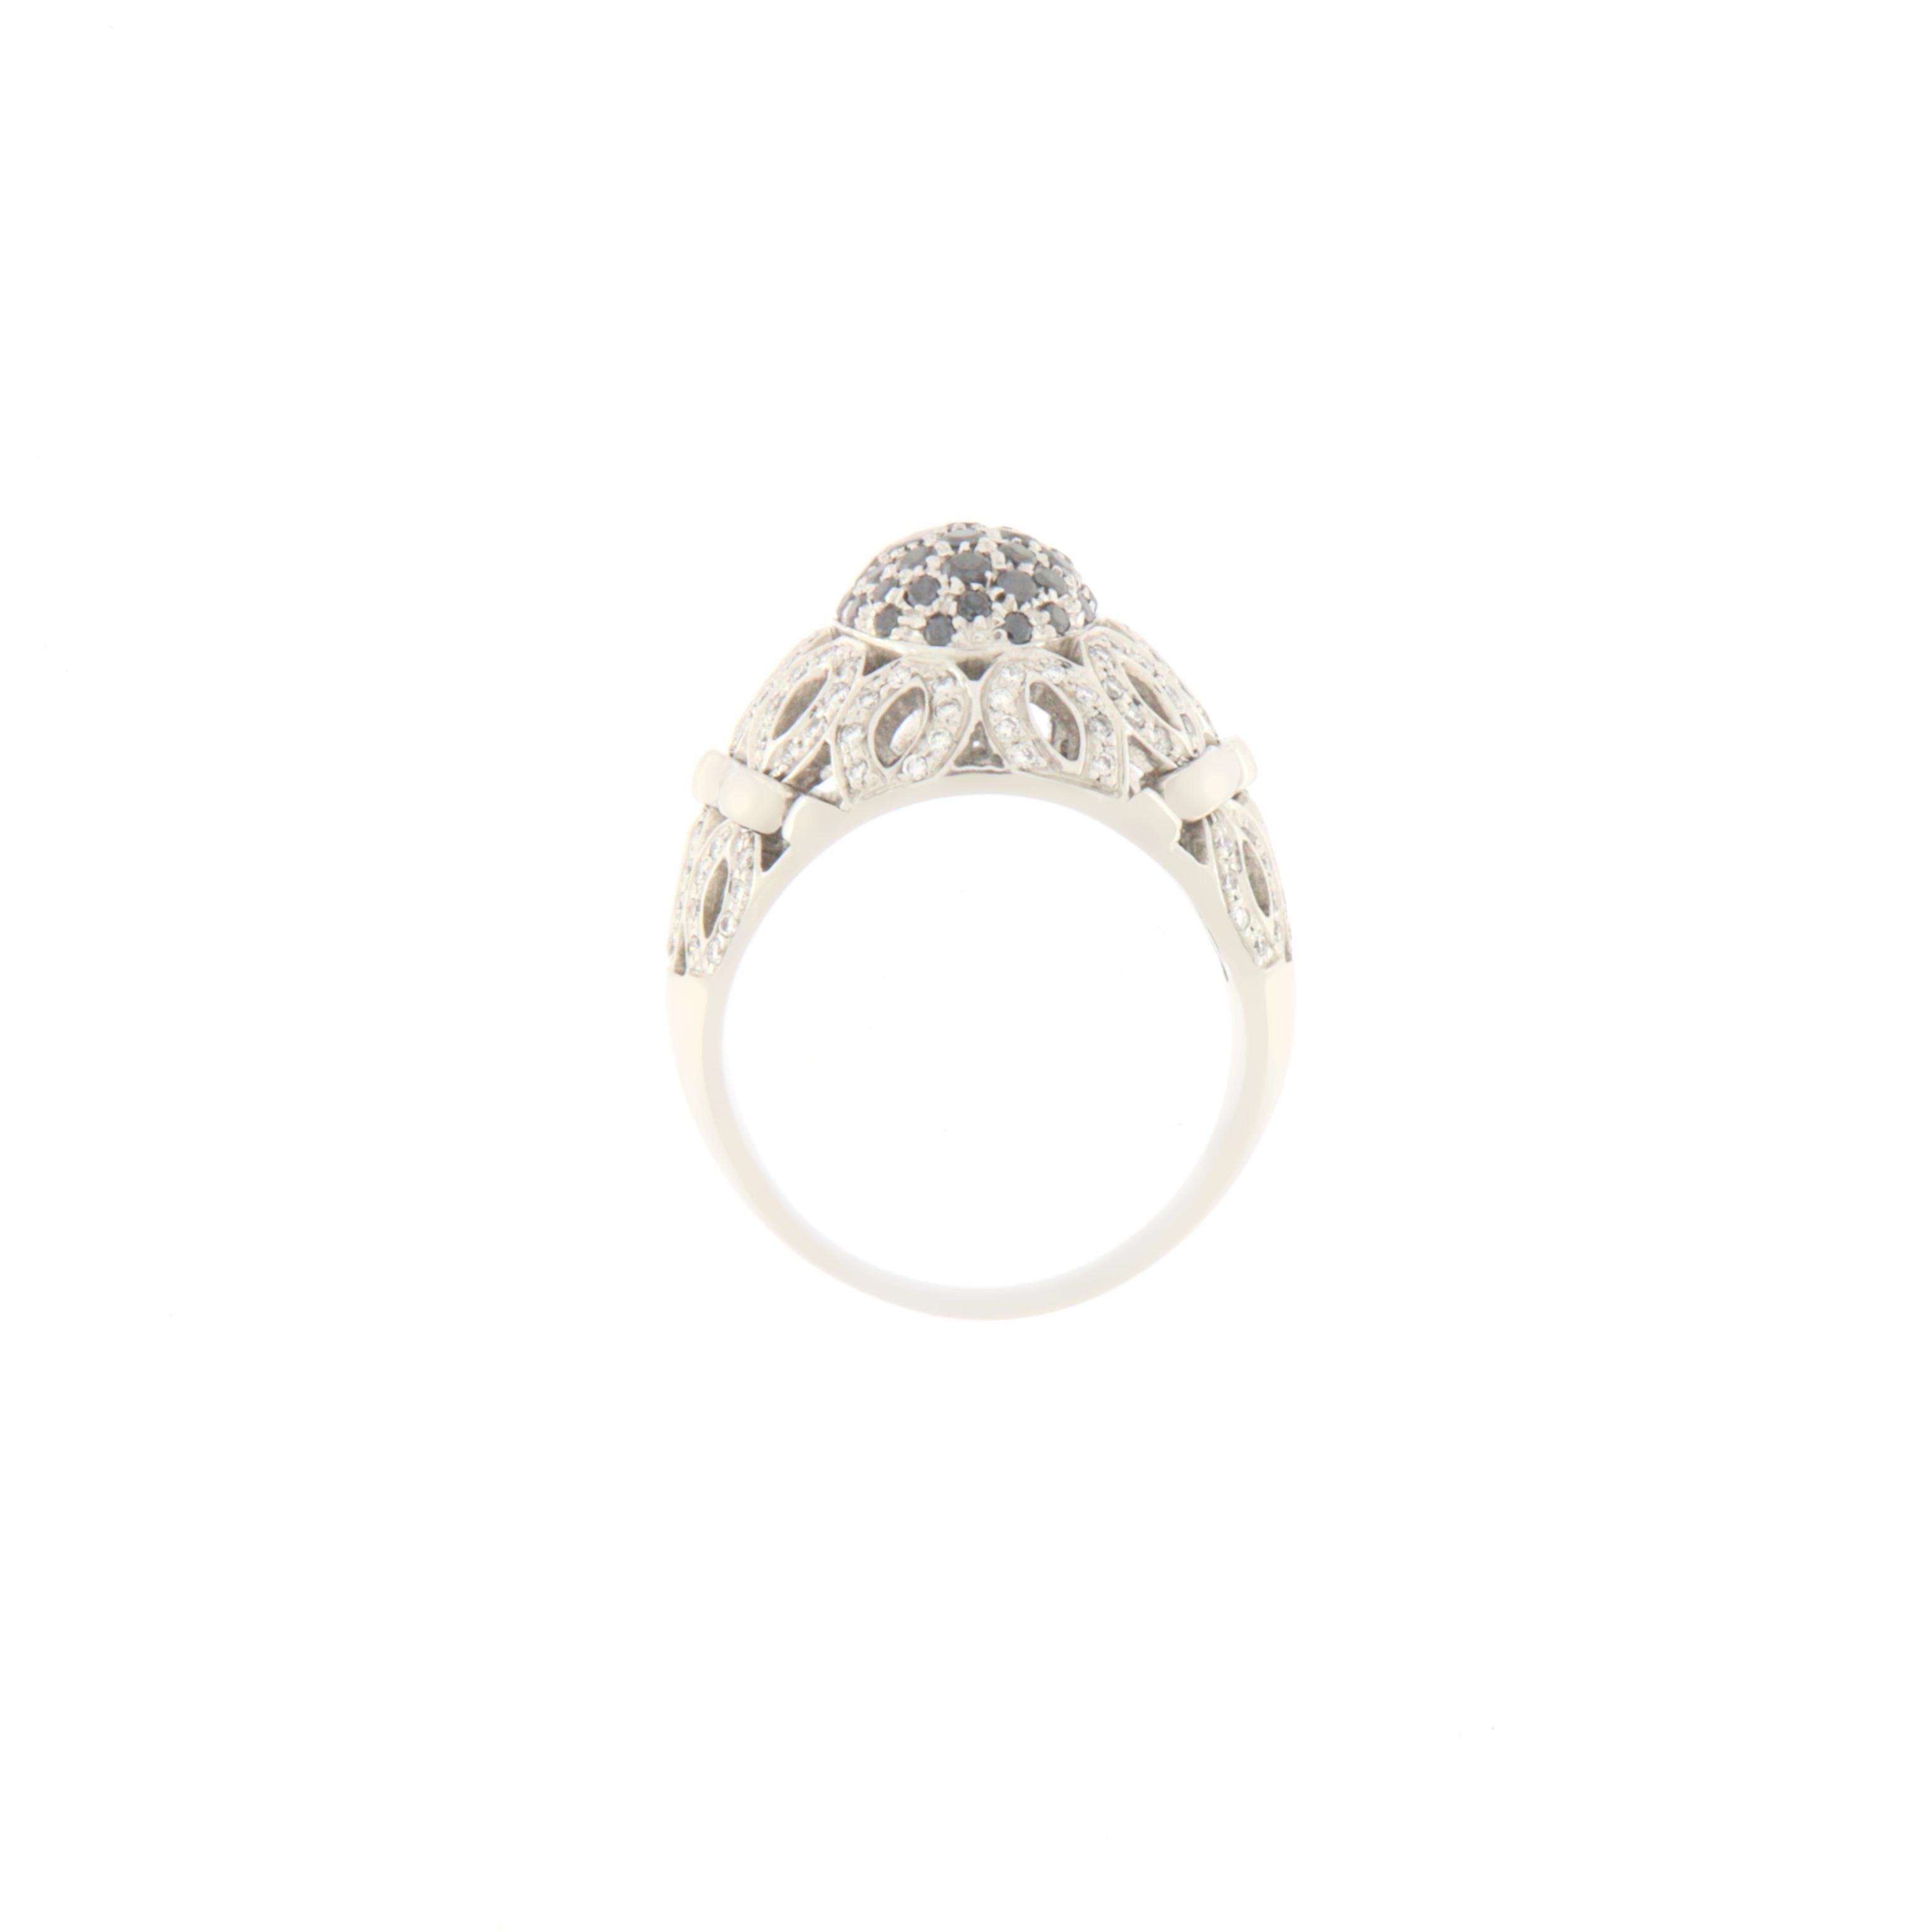 Ring aus 18 Karat Weißgold, hergestellt in Italien von Leo Pizzo.
Die Band Modell Ring hat etwa 2,95 Karat natürlichen Diamanten gesetzt, während auf der oberen zentralen Patch gibt es schwarze Diamanten gesetzt.
Eleganter Ring, geeignet für jede